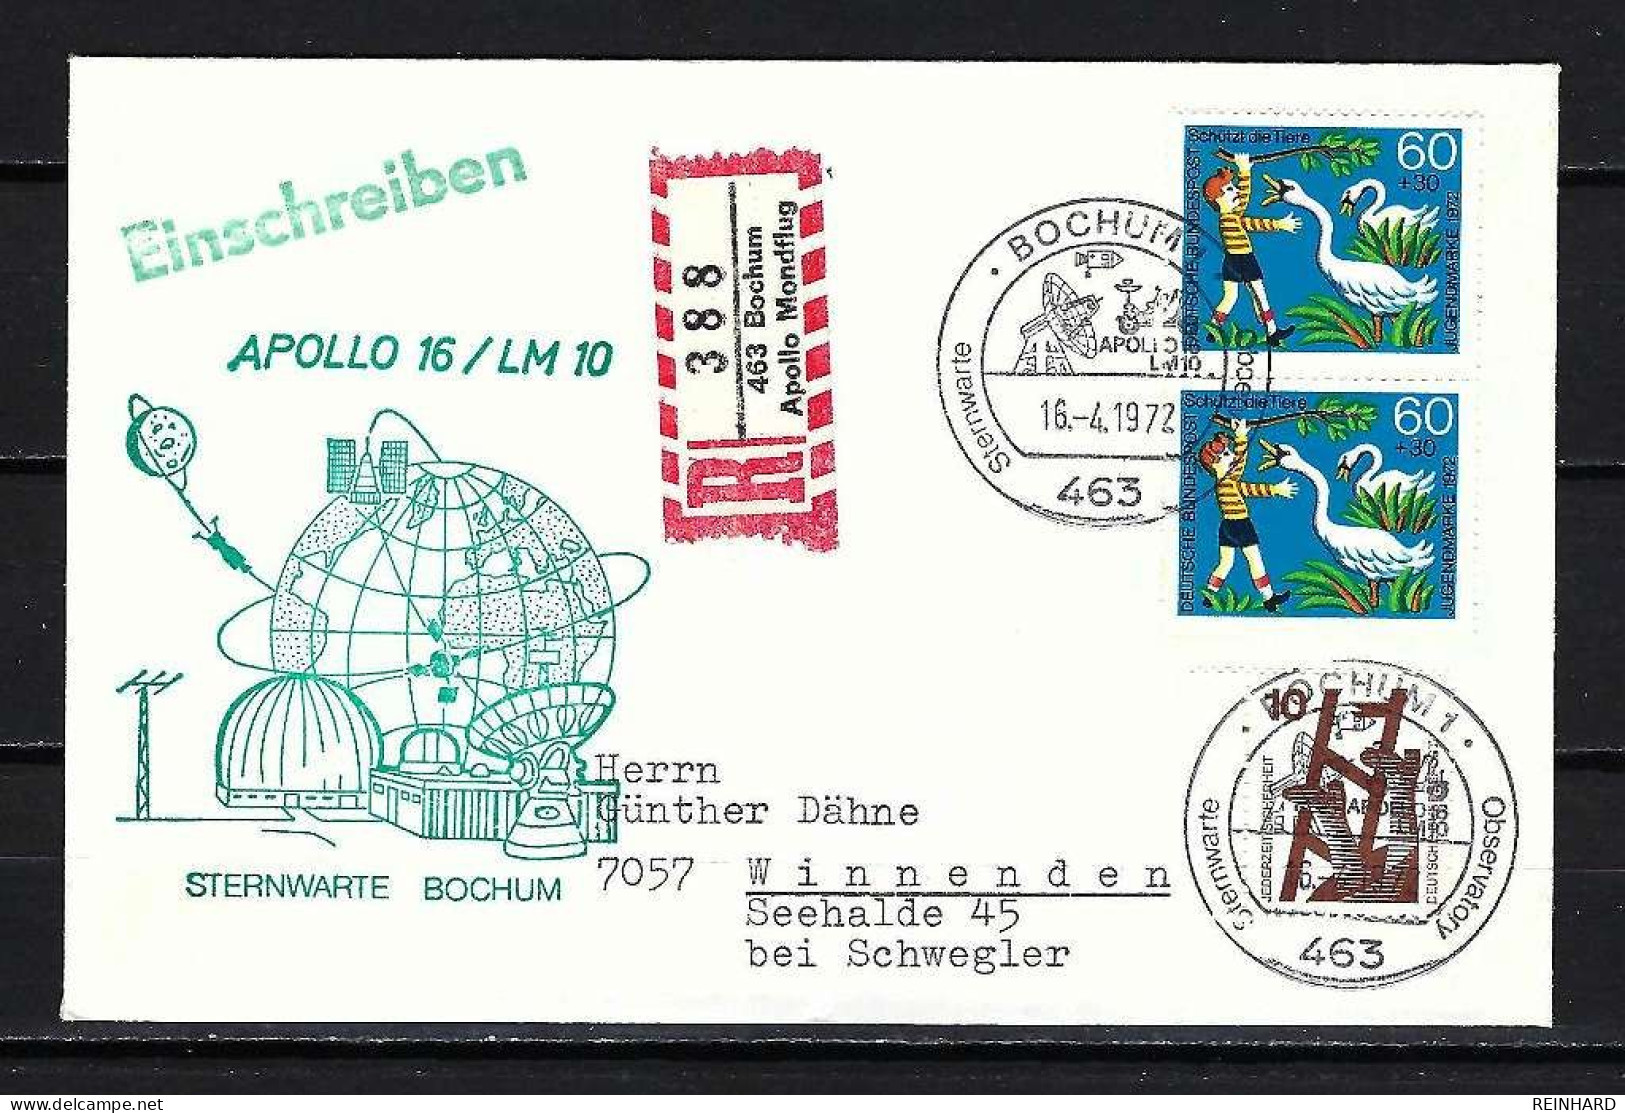 BUND Beleg Sternwarte Bochum Apollo 16/ LM 10 Stempel 16.4.1972 - Siehe Bild - Europe